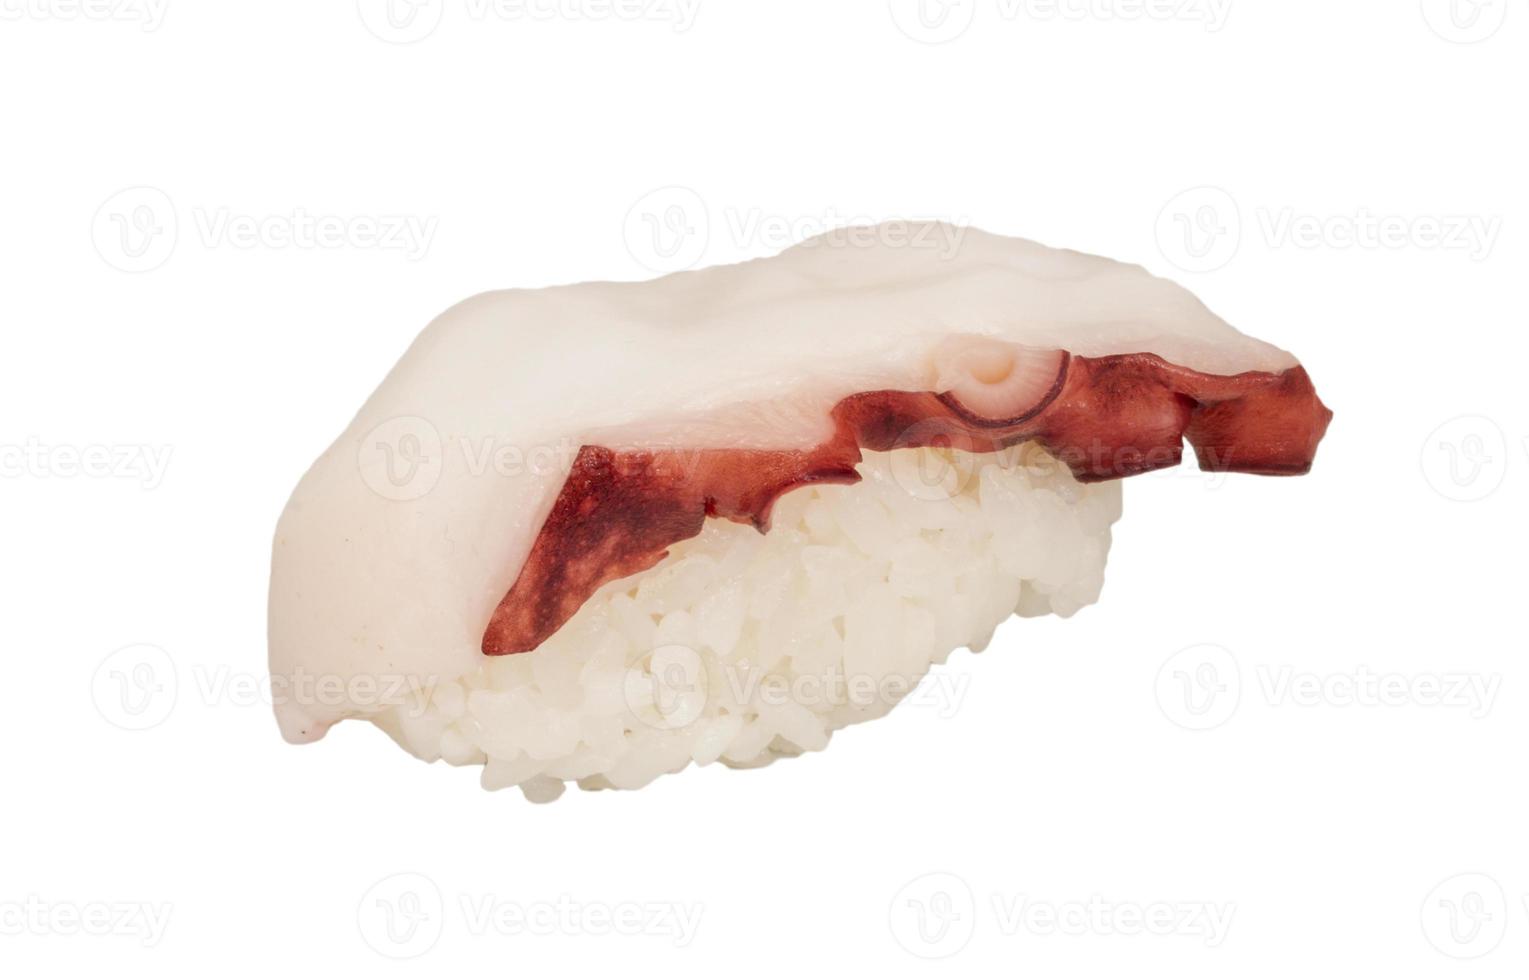 sushi japonés con pulpo de carne sobre un fondo blanco foto